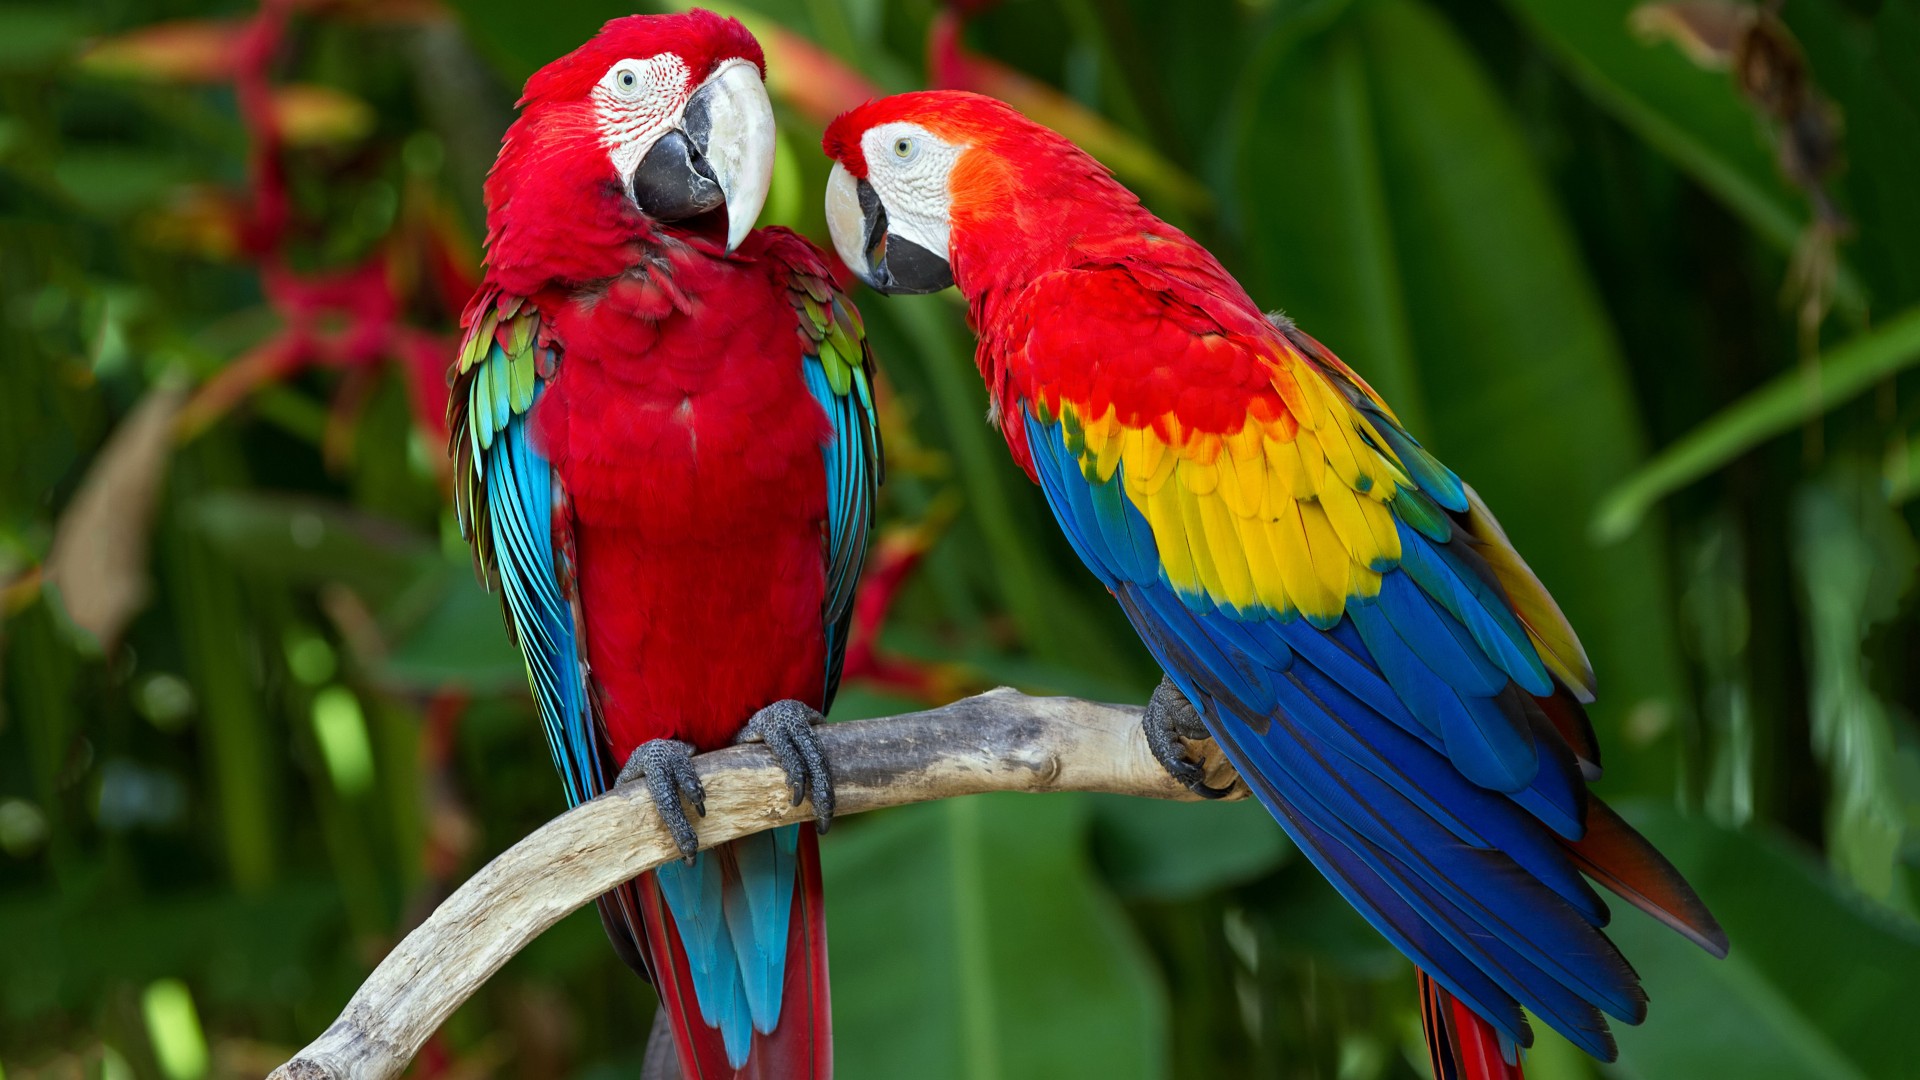 попугай, перья, ветка, экзотика, красные, синие, красный, синий, parrot, plumage, branch, exotic, red, blue (horizontal)